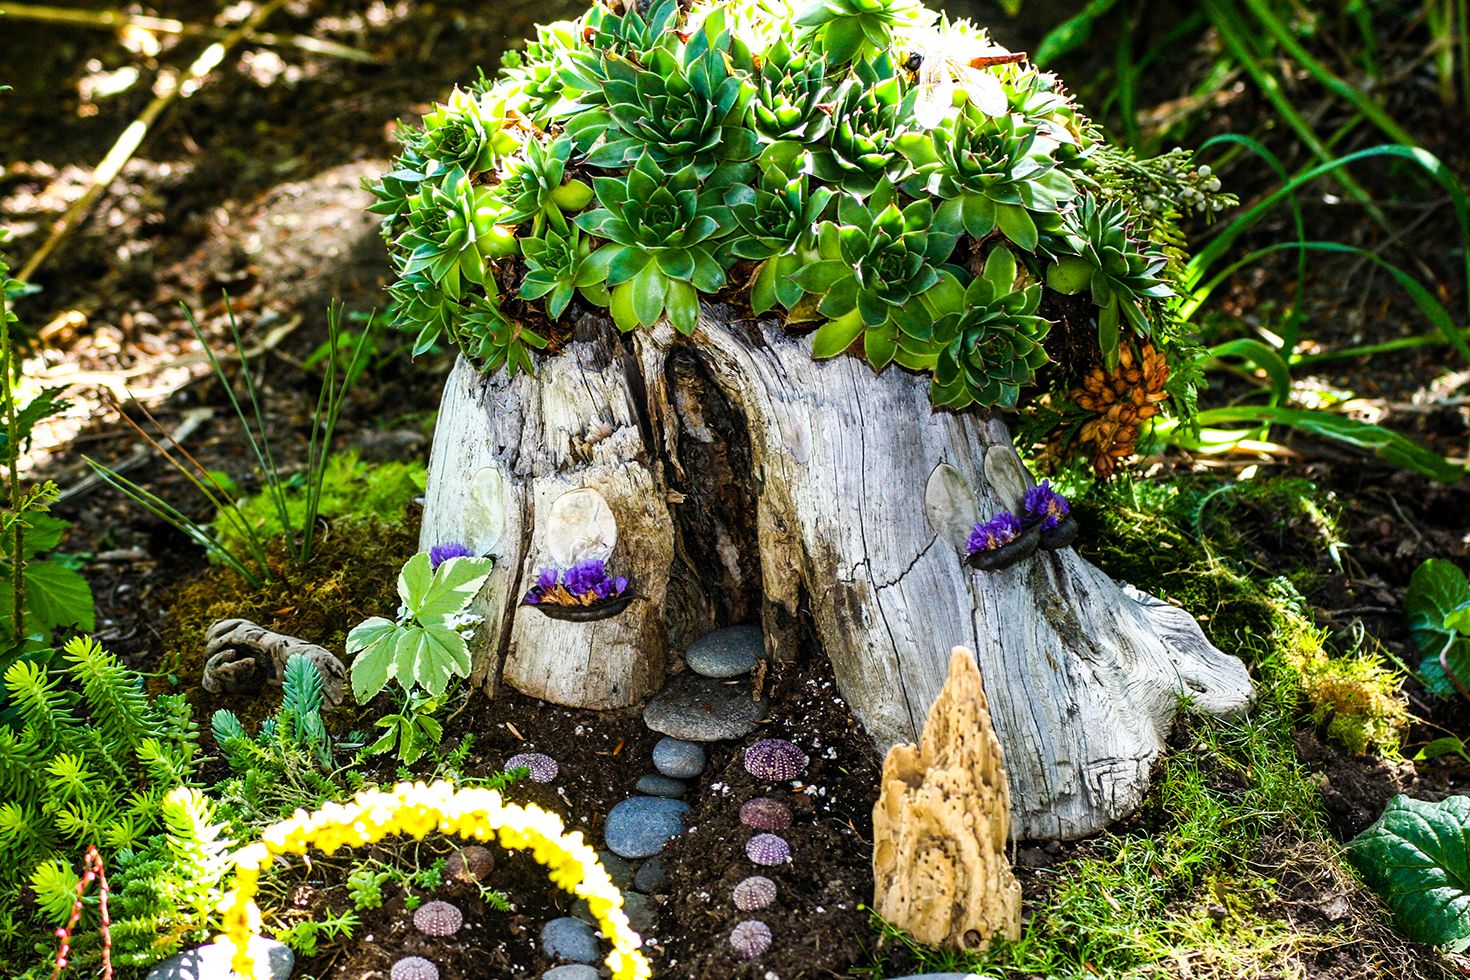 How to make a miniature garden - The Good Earth Garden Center